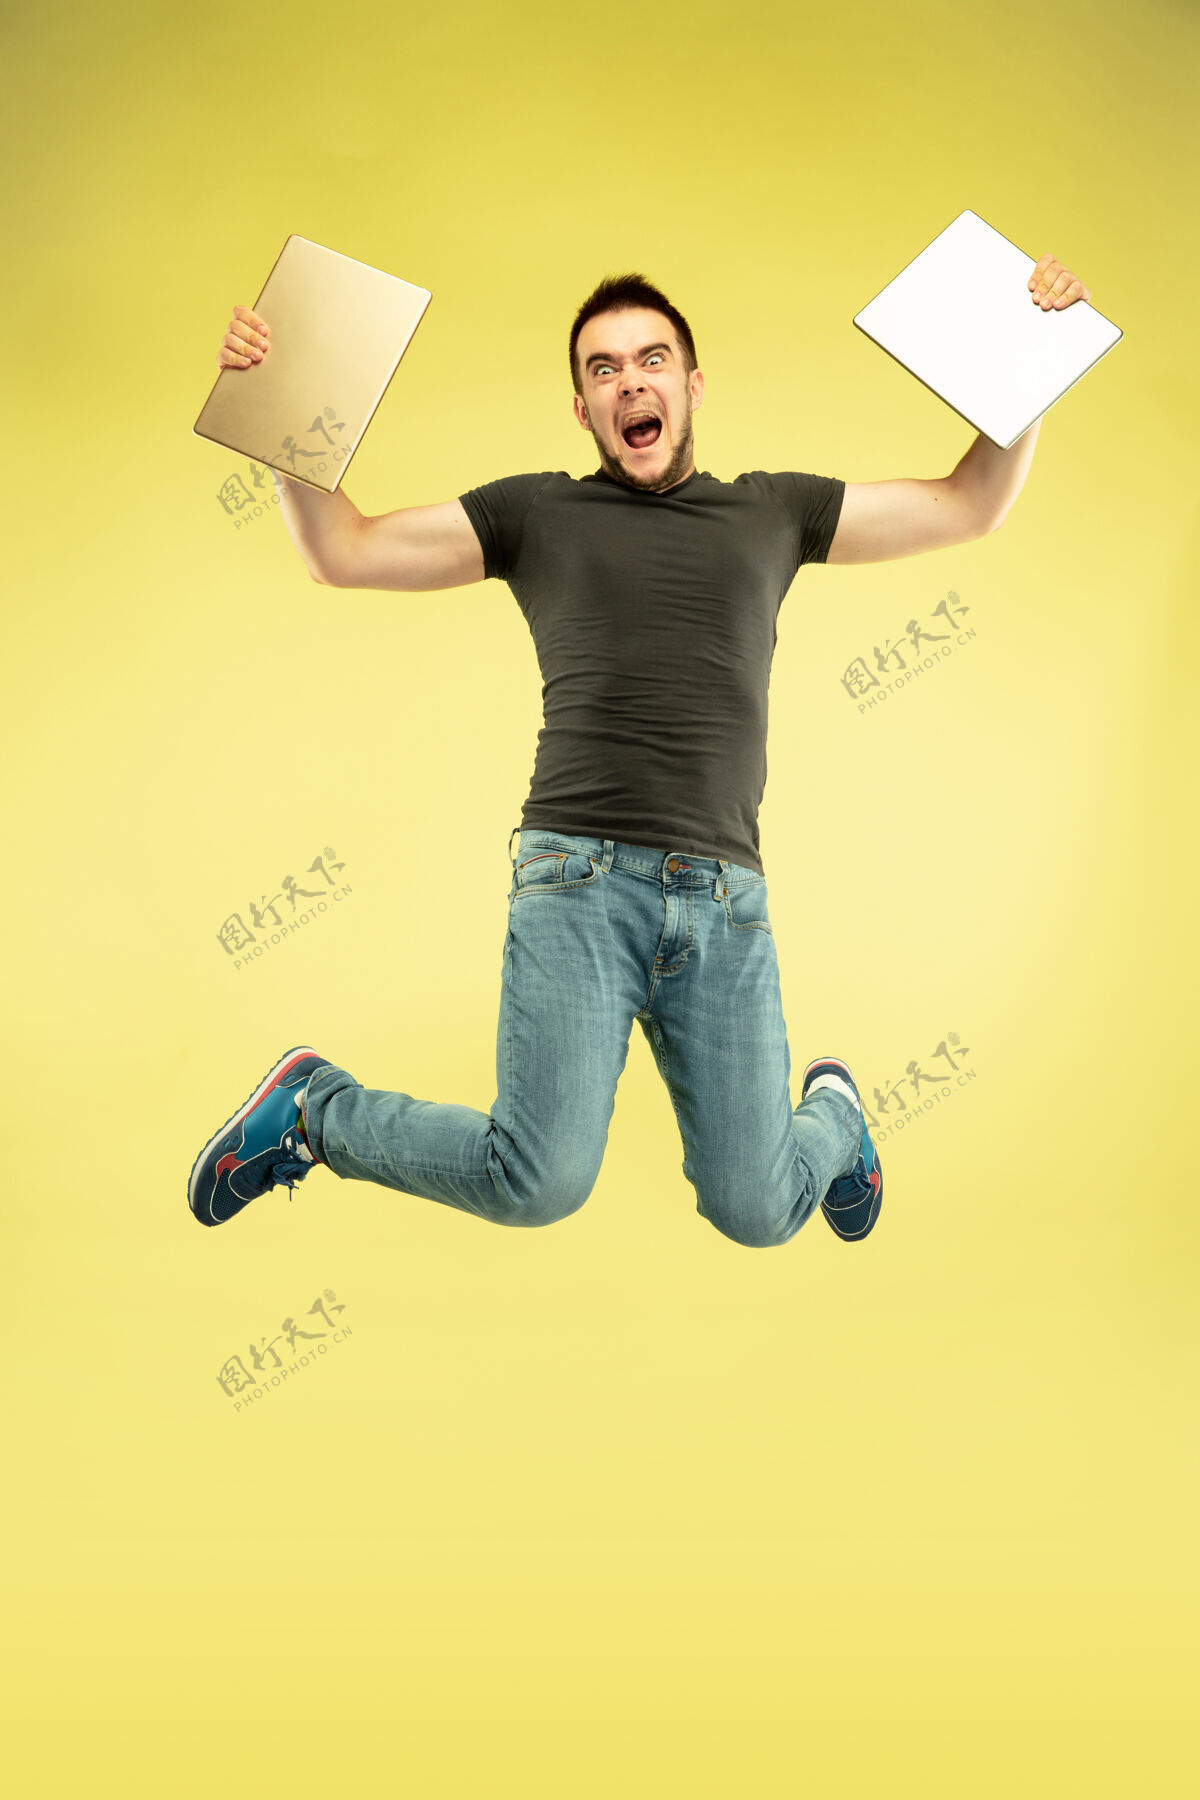 跳跃失重全长的快乐跳跃的人与黄色背景上孤立的小玩意画像现代科技 自由选择的概念 情感的概念使用自拍或飞行中的vlog平板电脑设备平板电脑连接